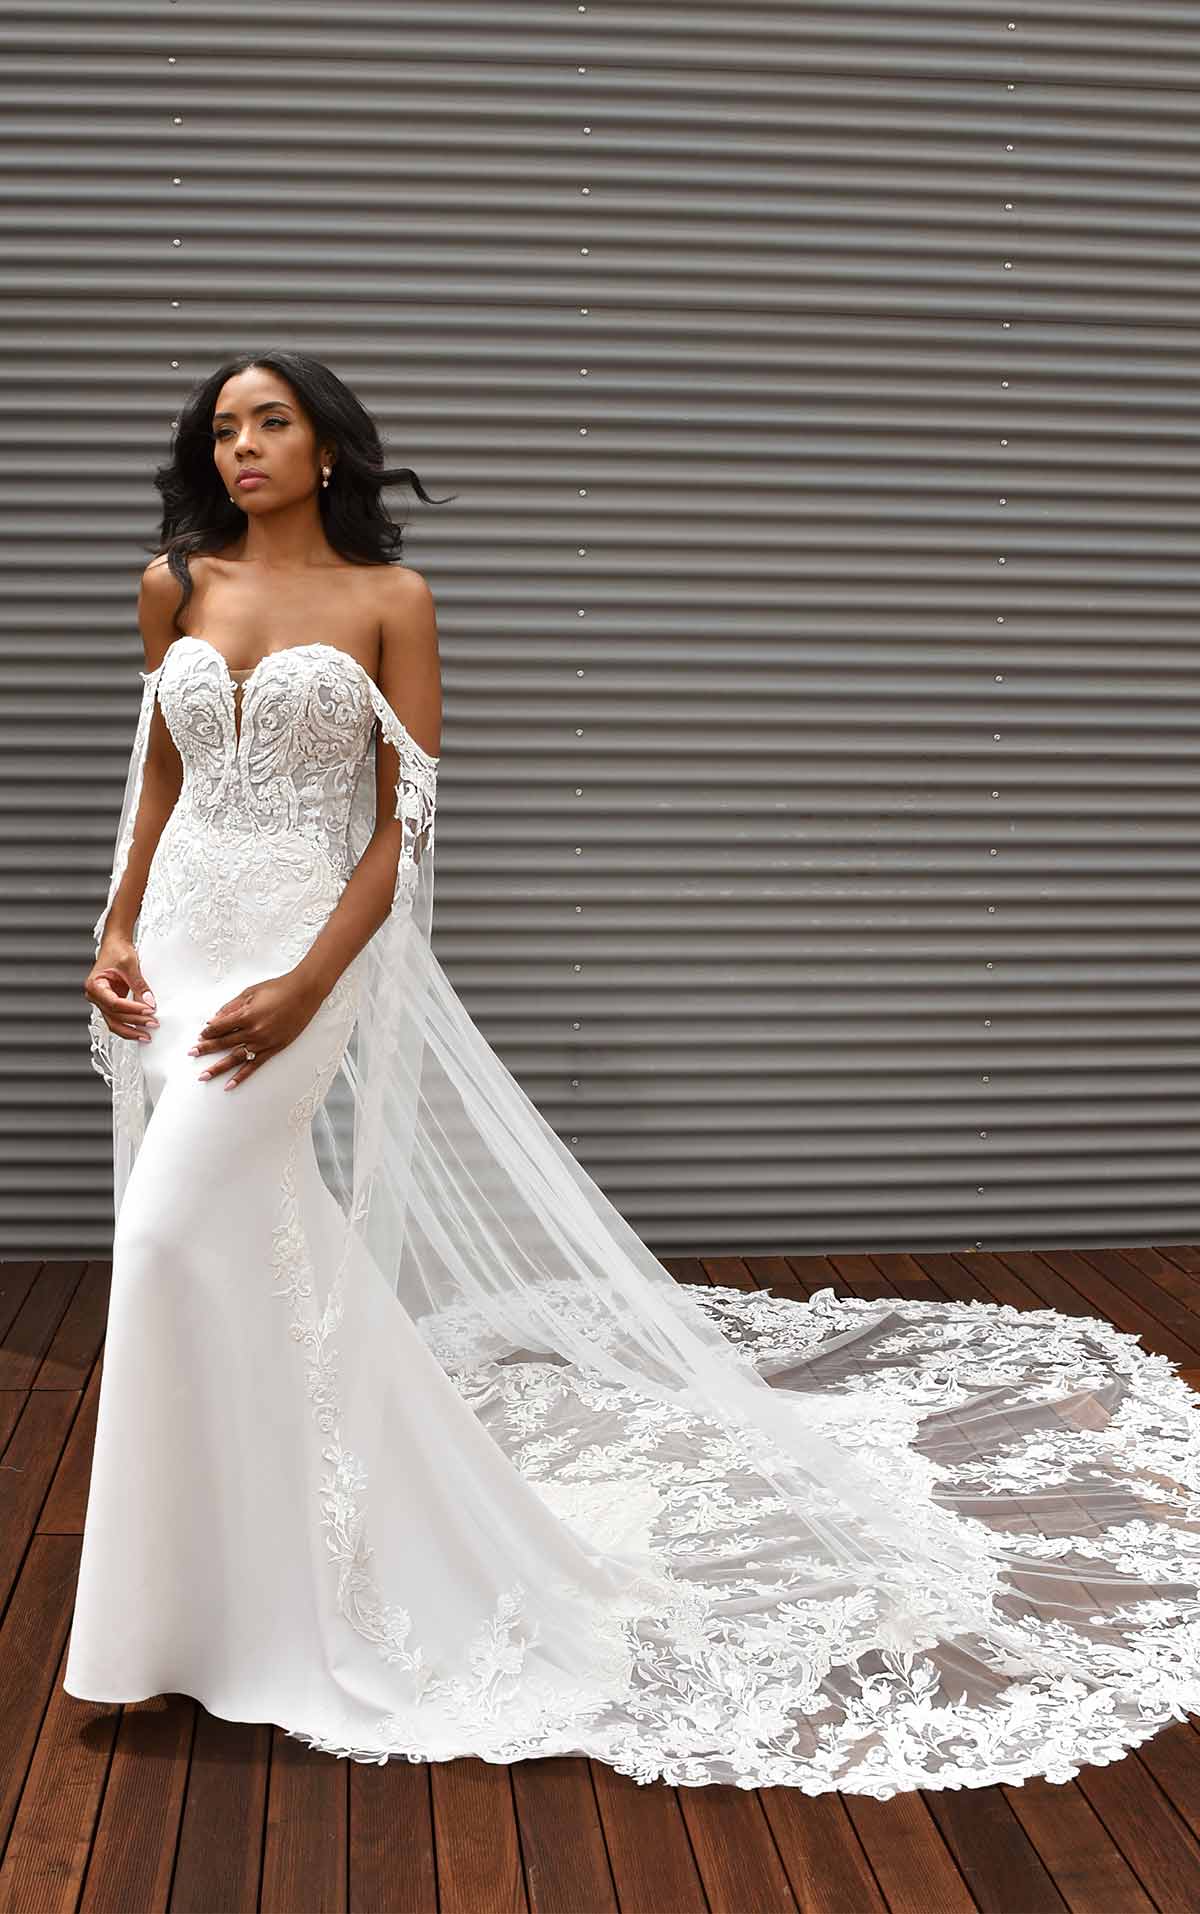 The new minimalist wedding dress: 11 timelessly elegant bridal looks | Boho wedding  dress, Minimalist wedding dresses, Short wedding dress